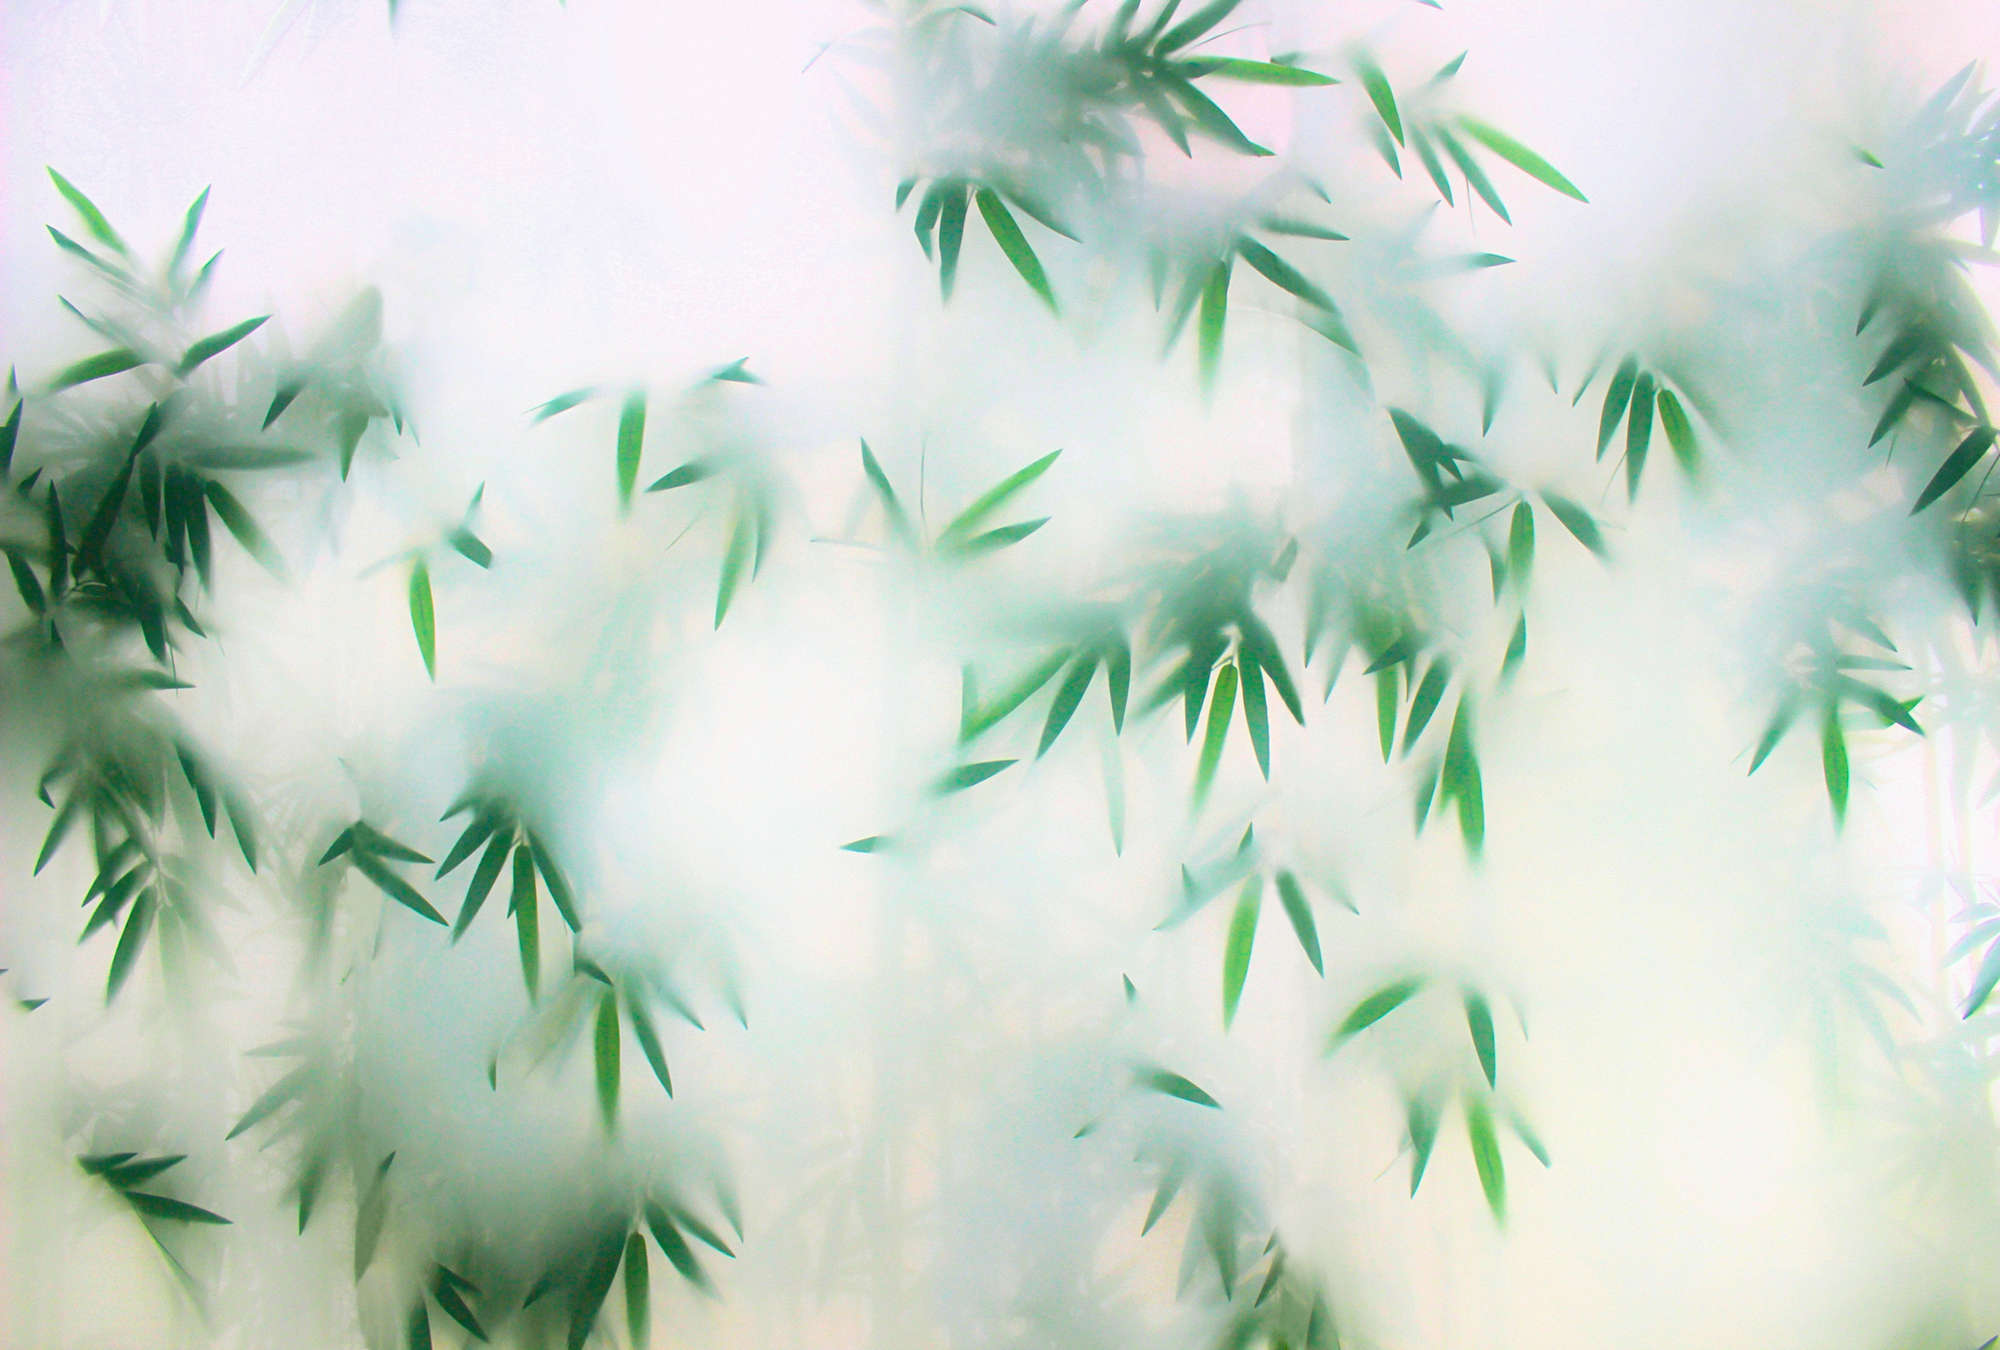             Panda Paradise 3 - hojas de papel pintado de bambú en la niebla
        